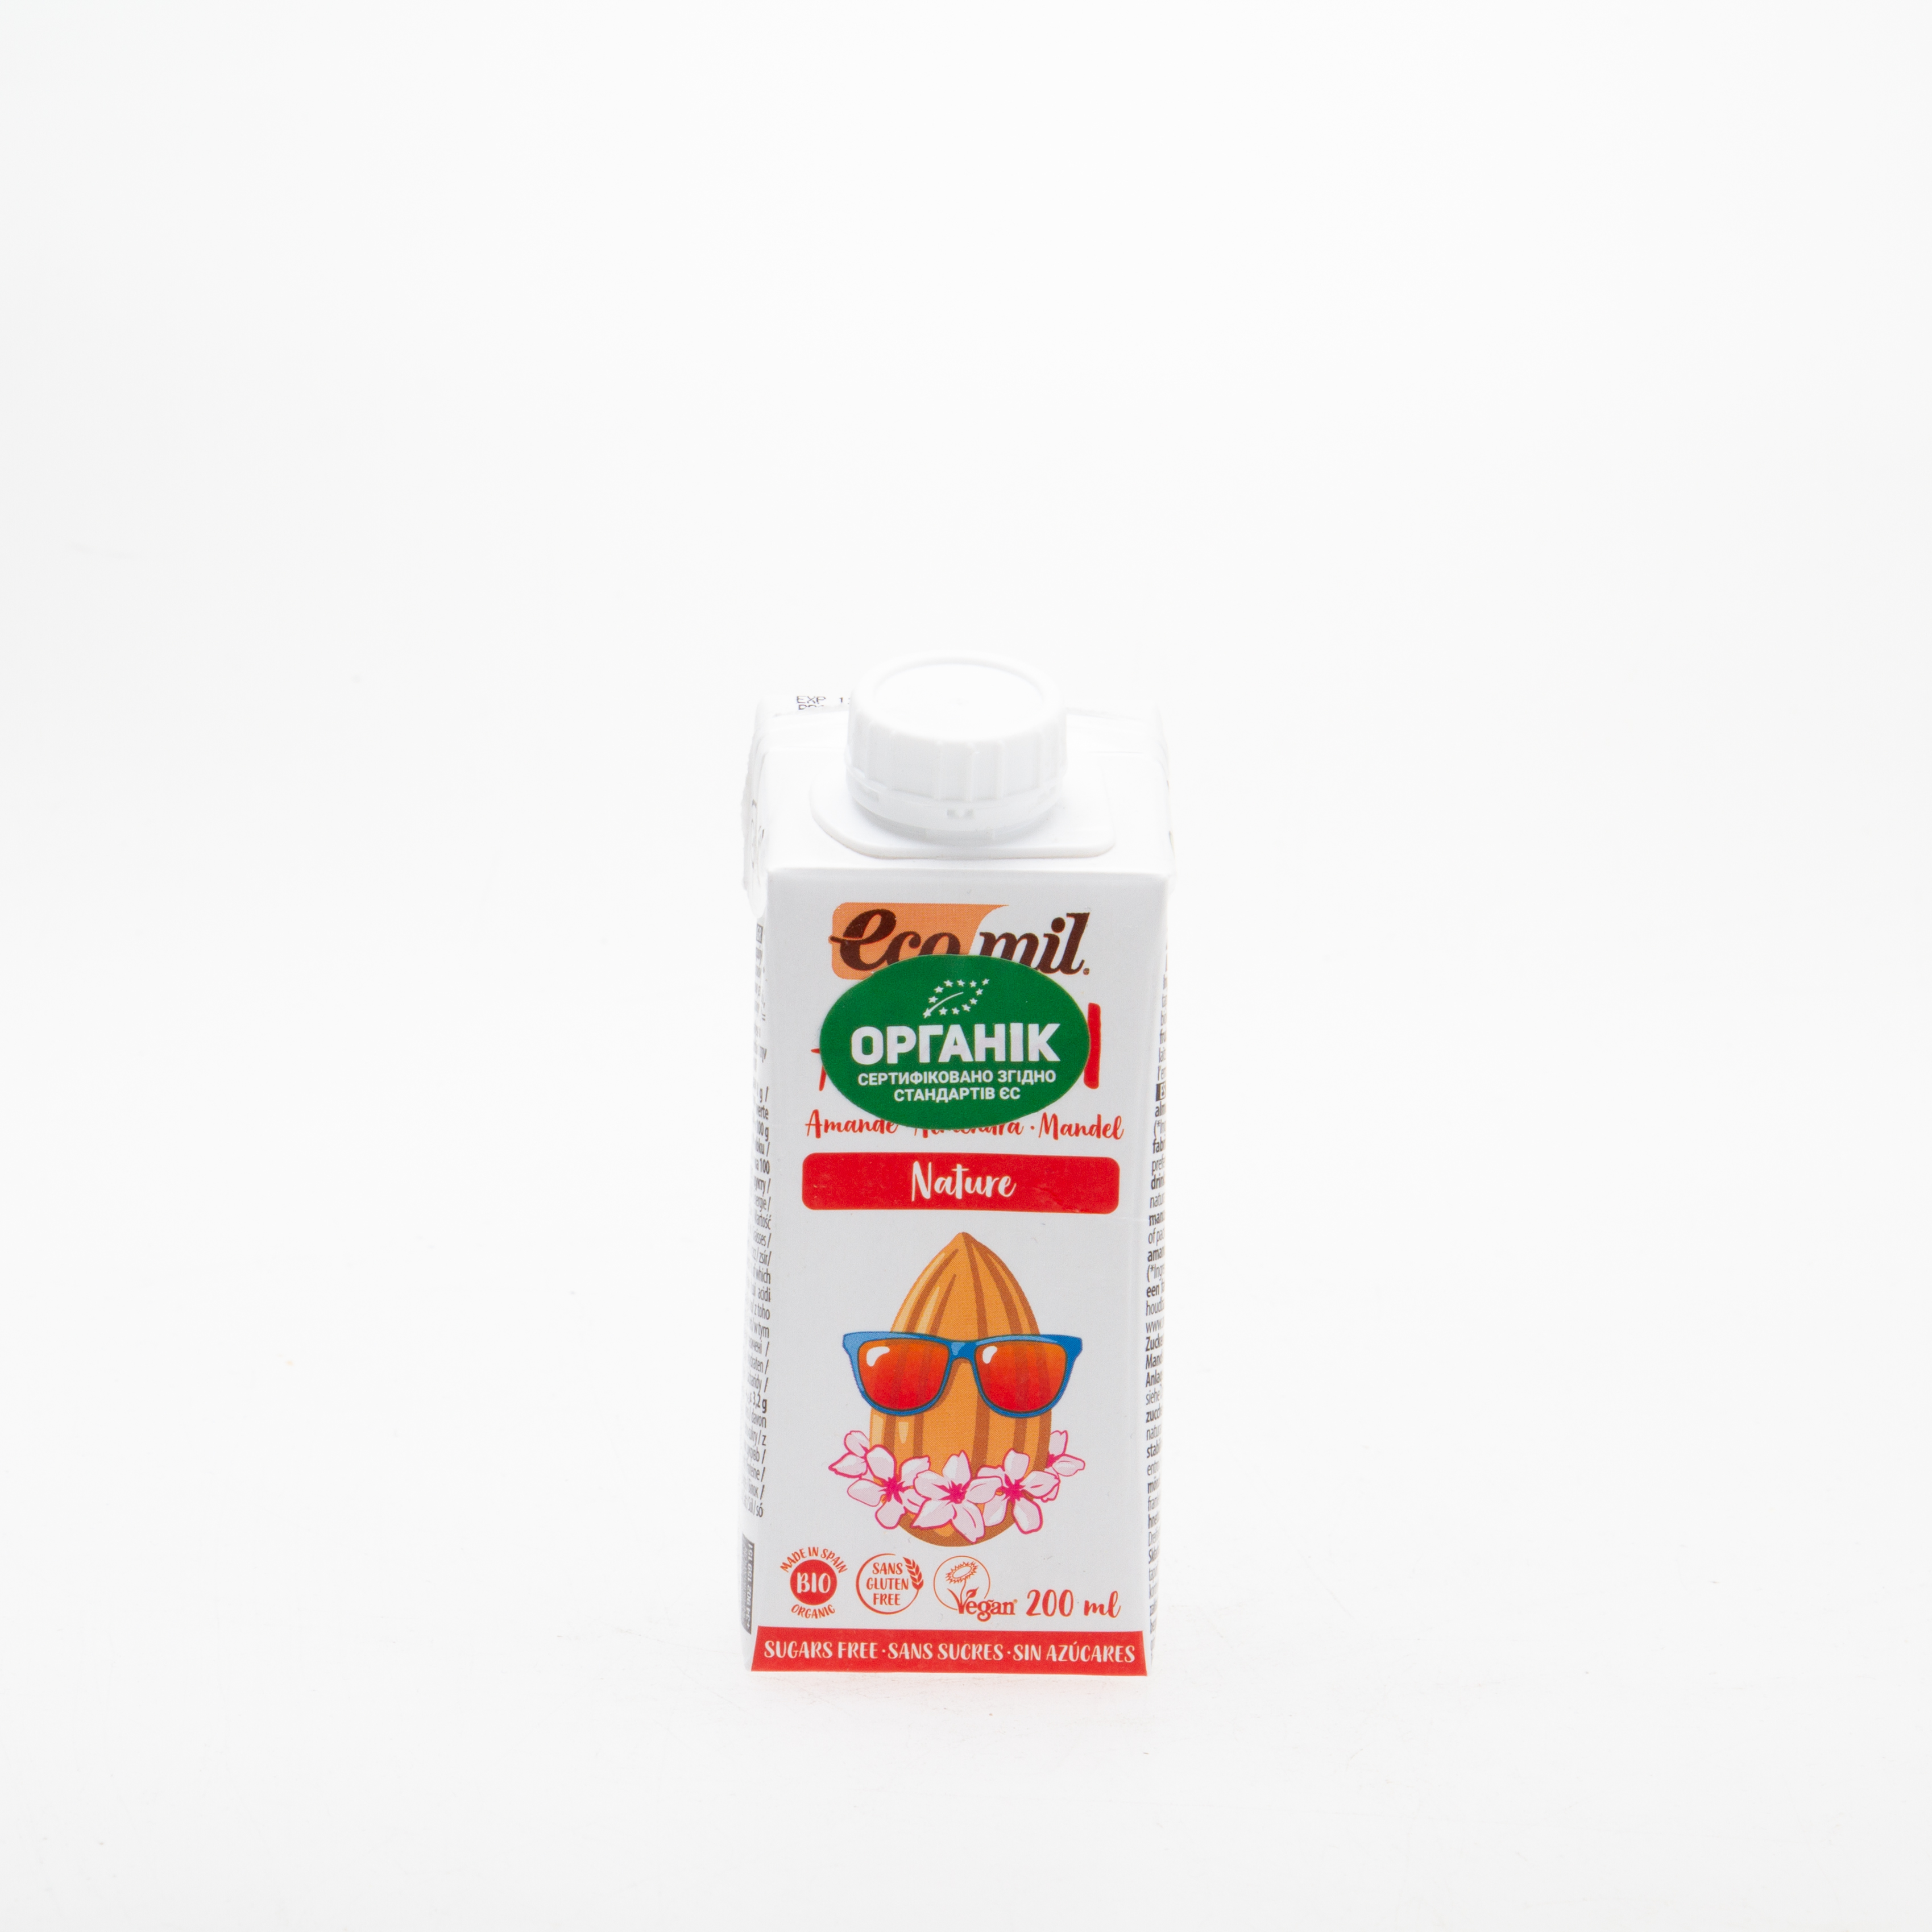 Органічне рослинне молоко з мигдалю без цукру, 0,2л - купить в интернет-магазине Юнимед